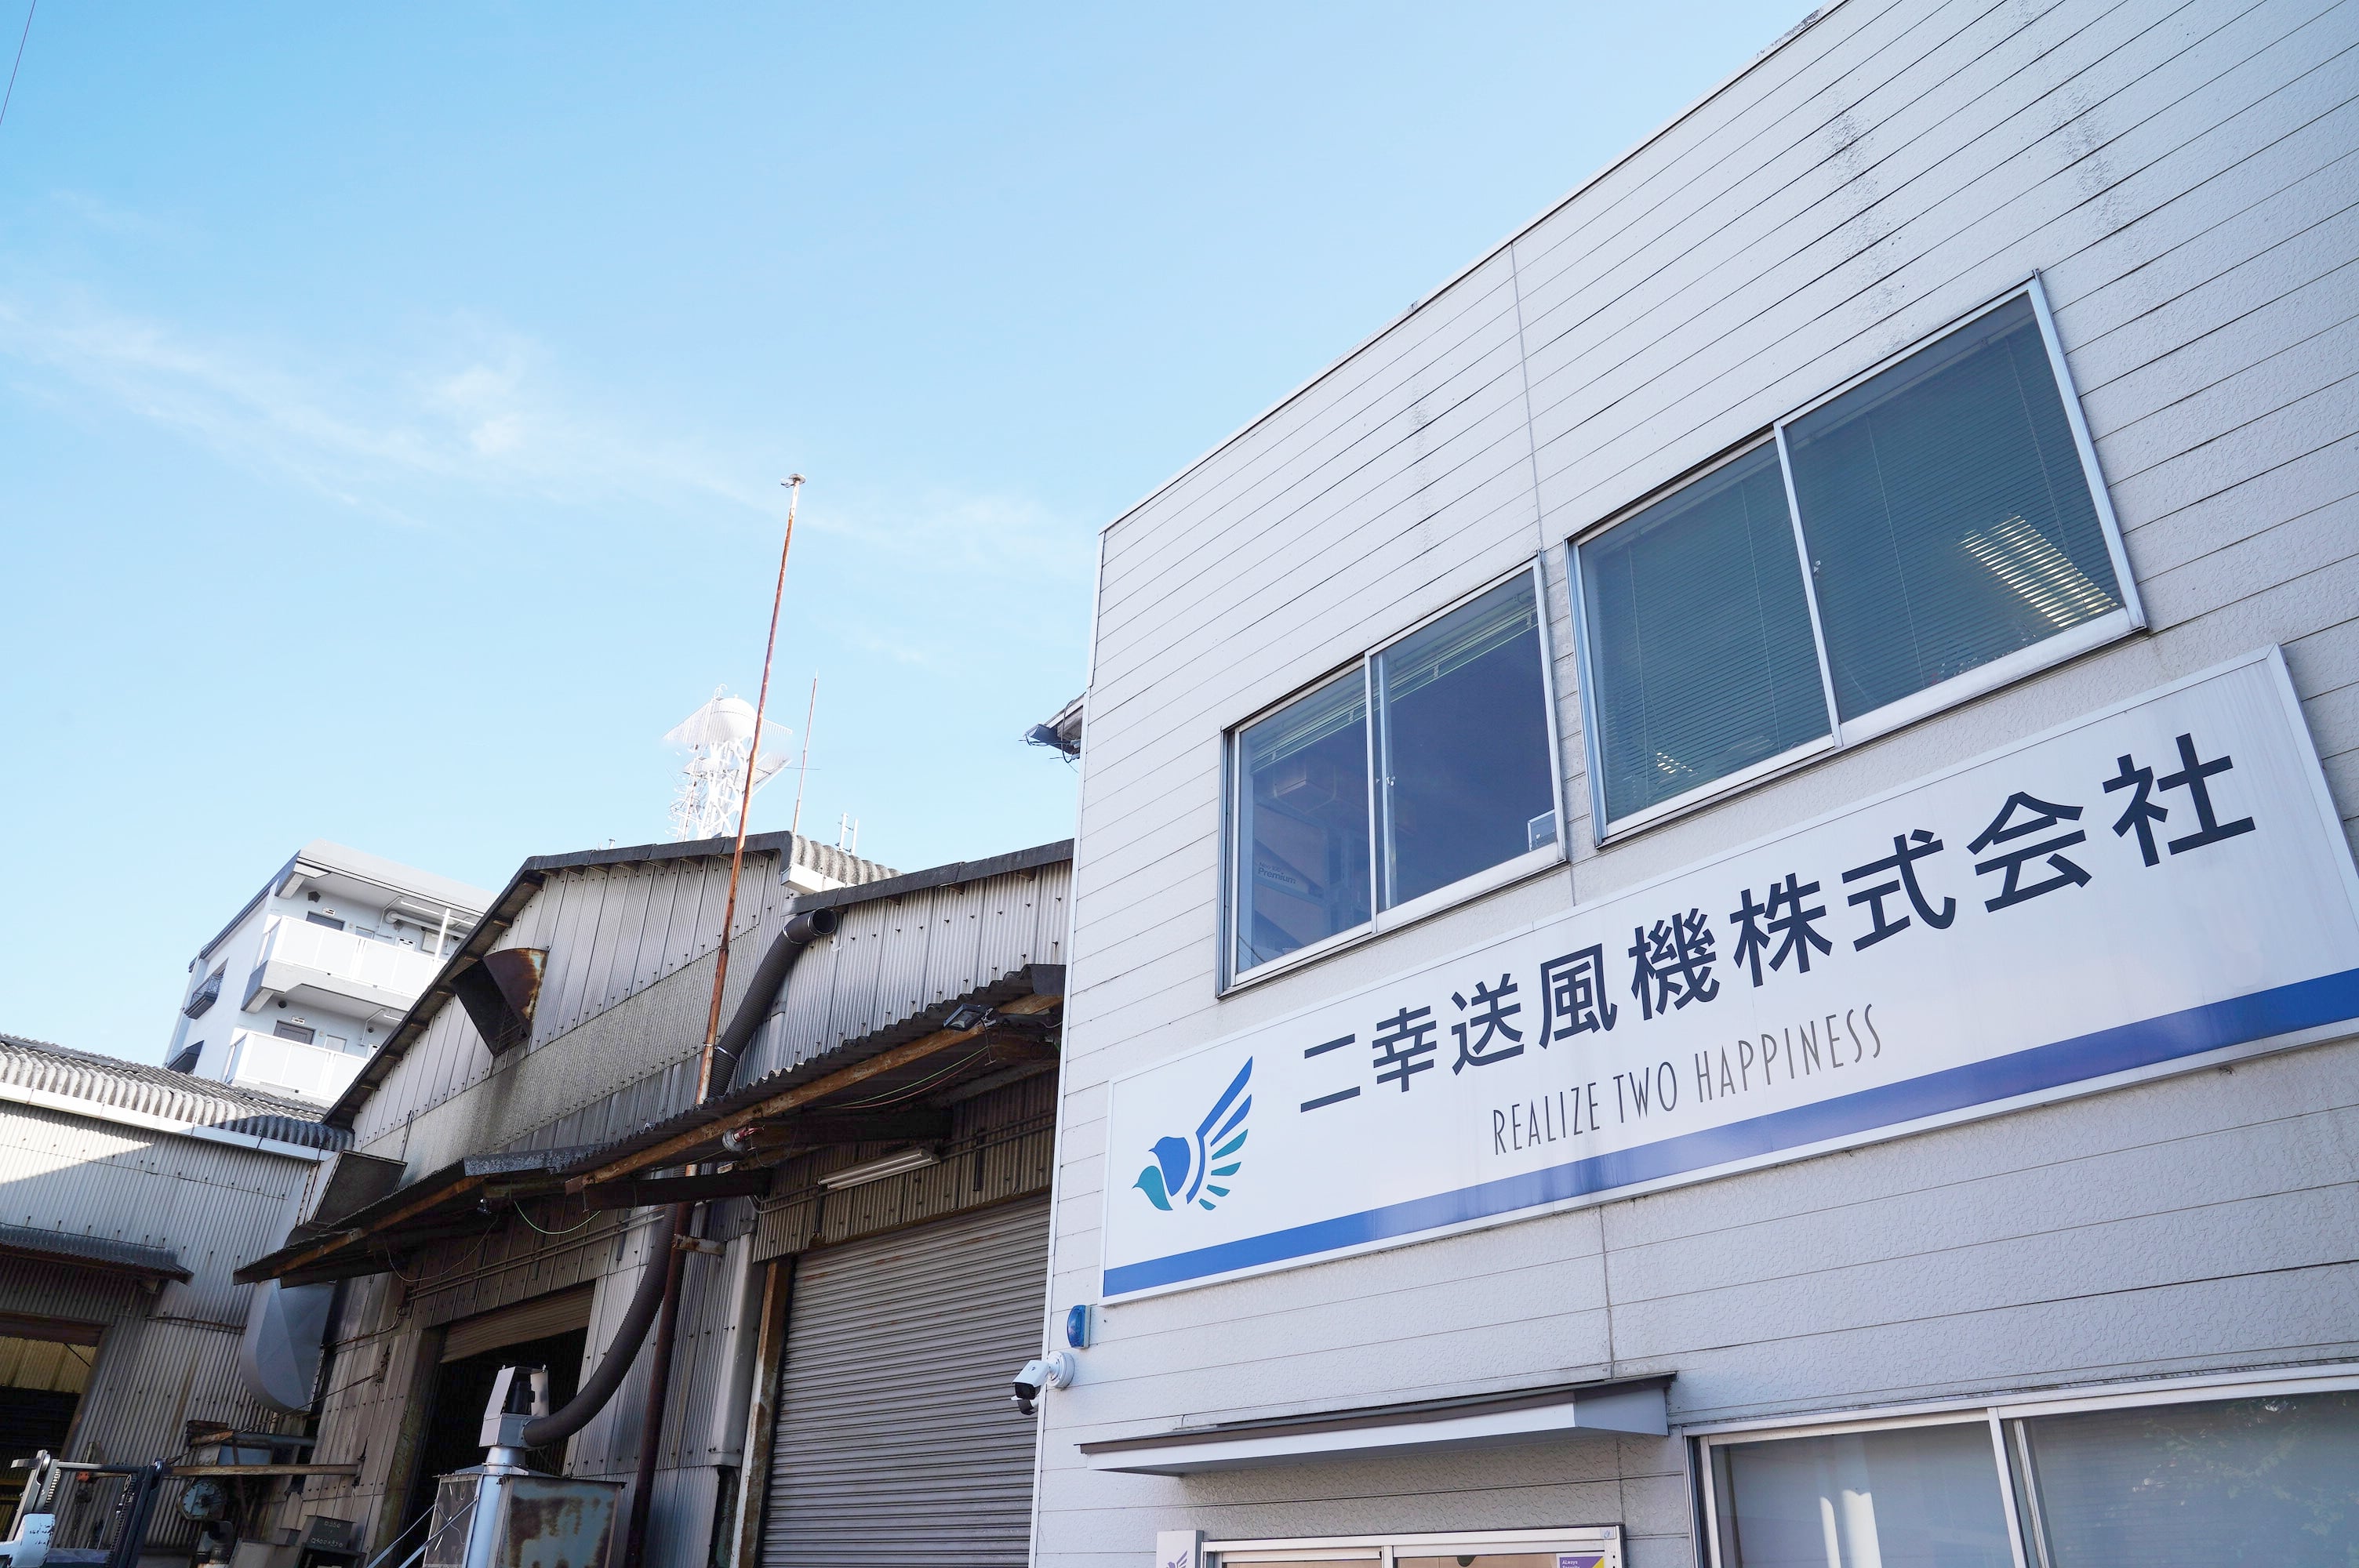 愛媛県松山市に設立され、東京に営業所を構える二幸送風機株式会社の松山本社・工場。